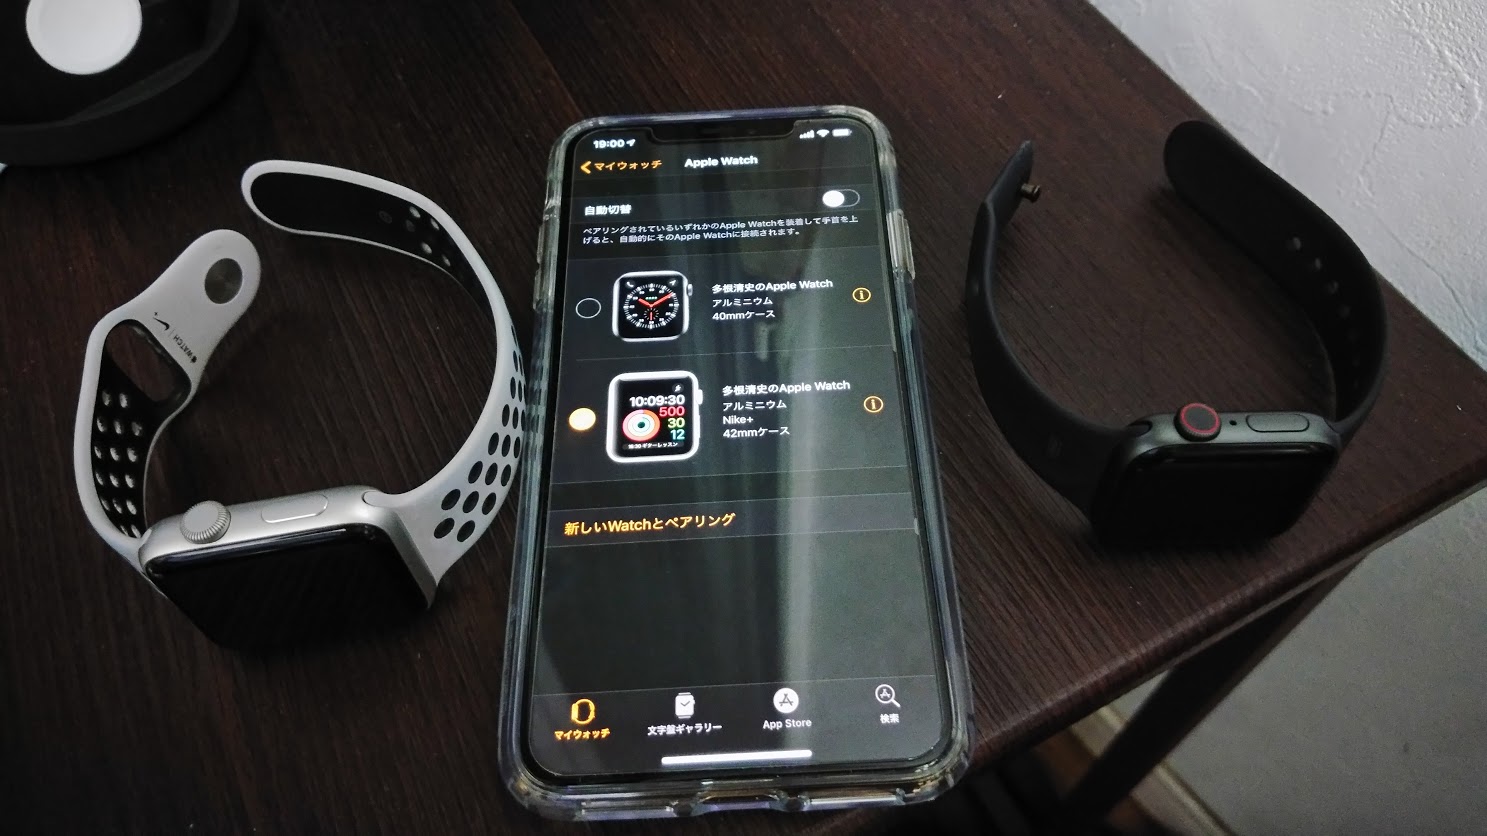 Apple Watchは2個持ちがオススメ？ Series 4は「広さ」よりも「小ささ」が魅力（多根清史） - Engadget 日本版